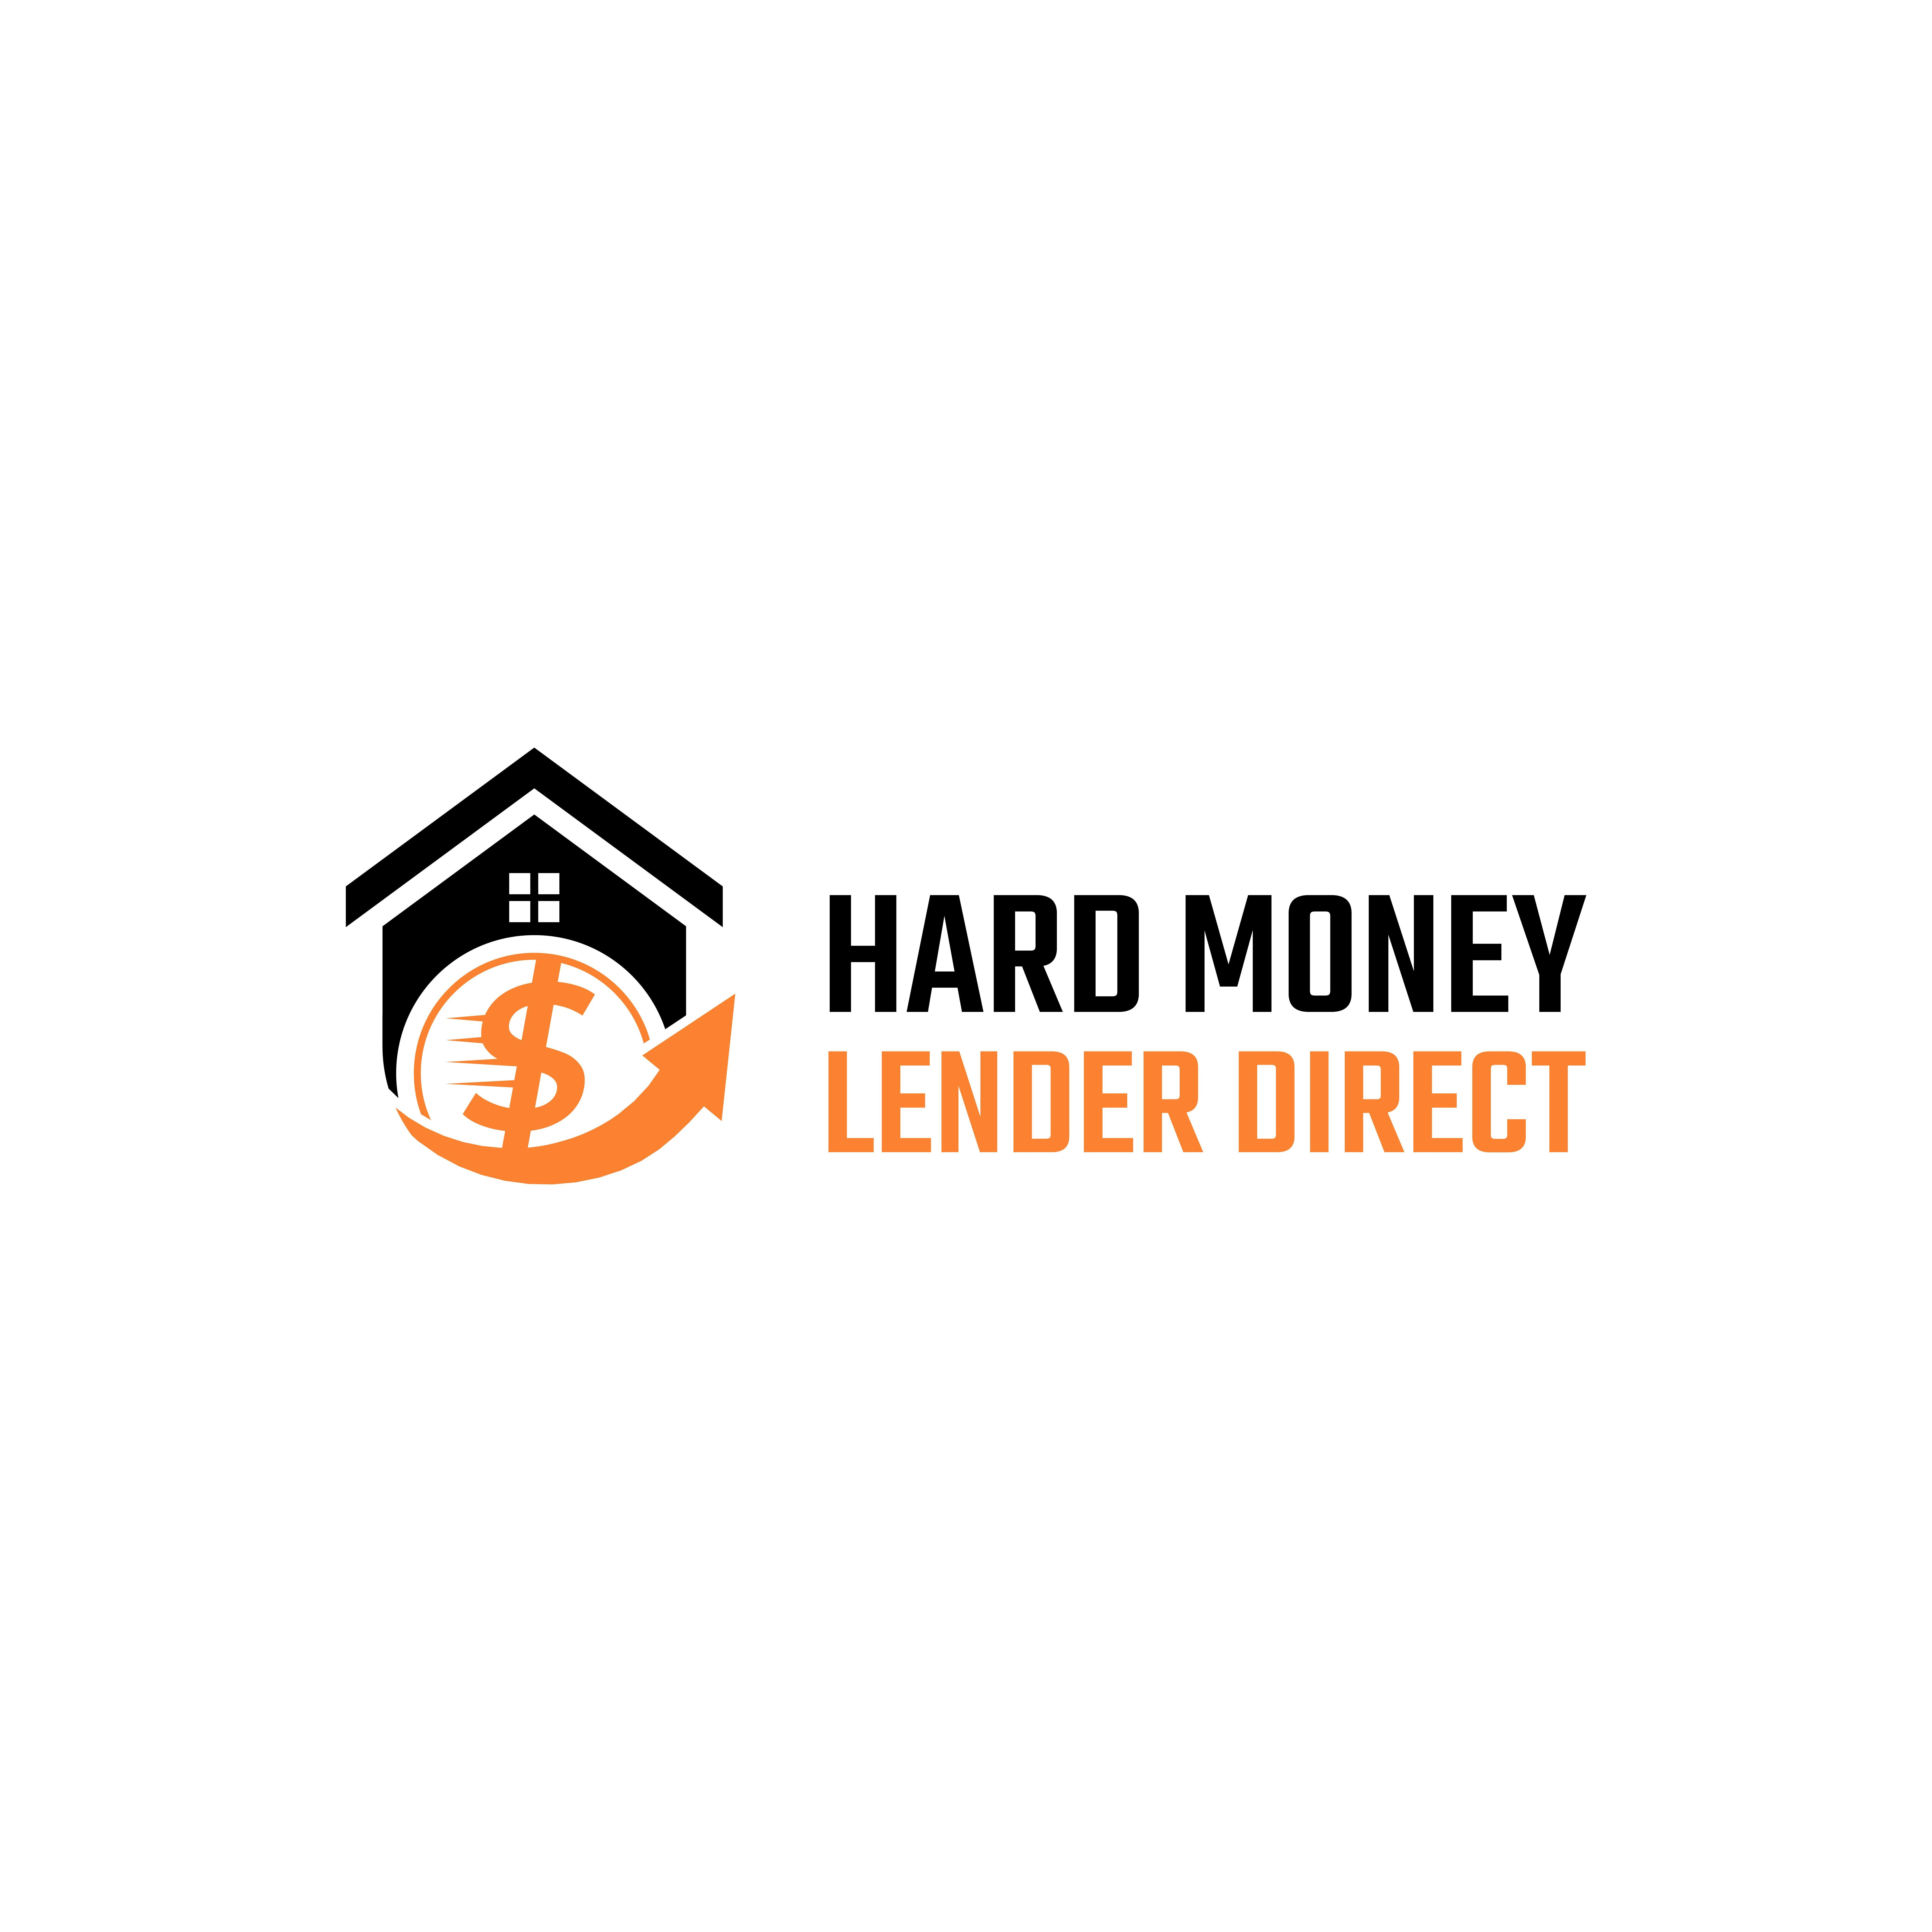 Hard Money Lender Direct